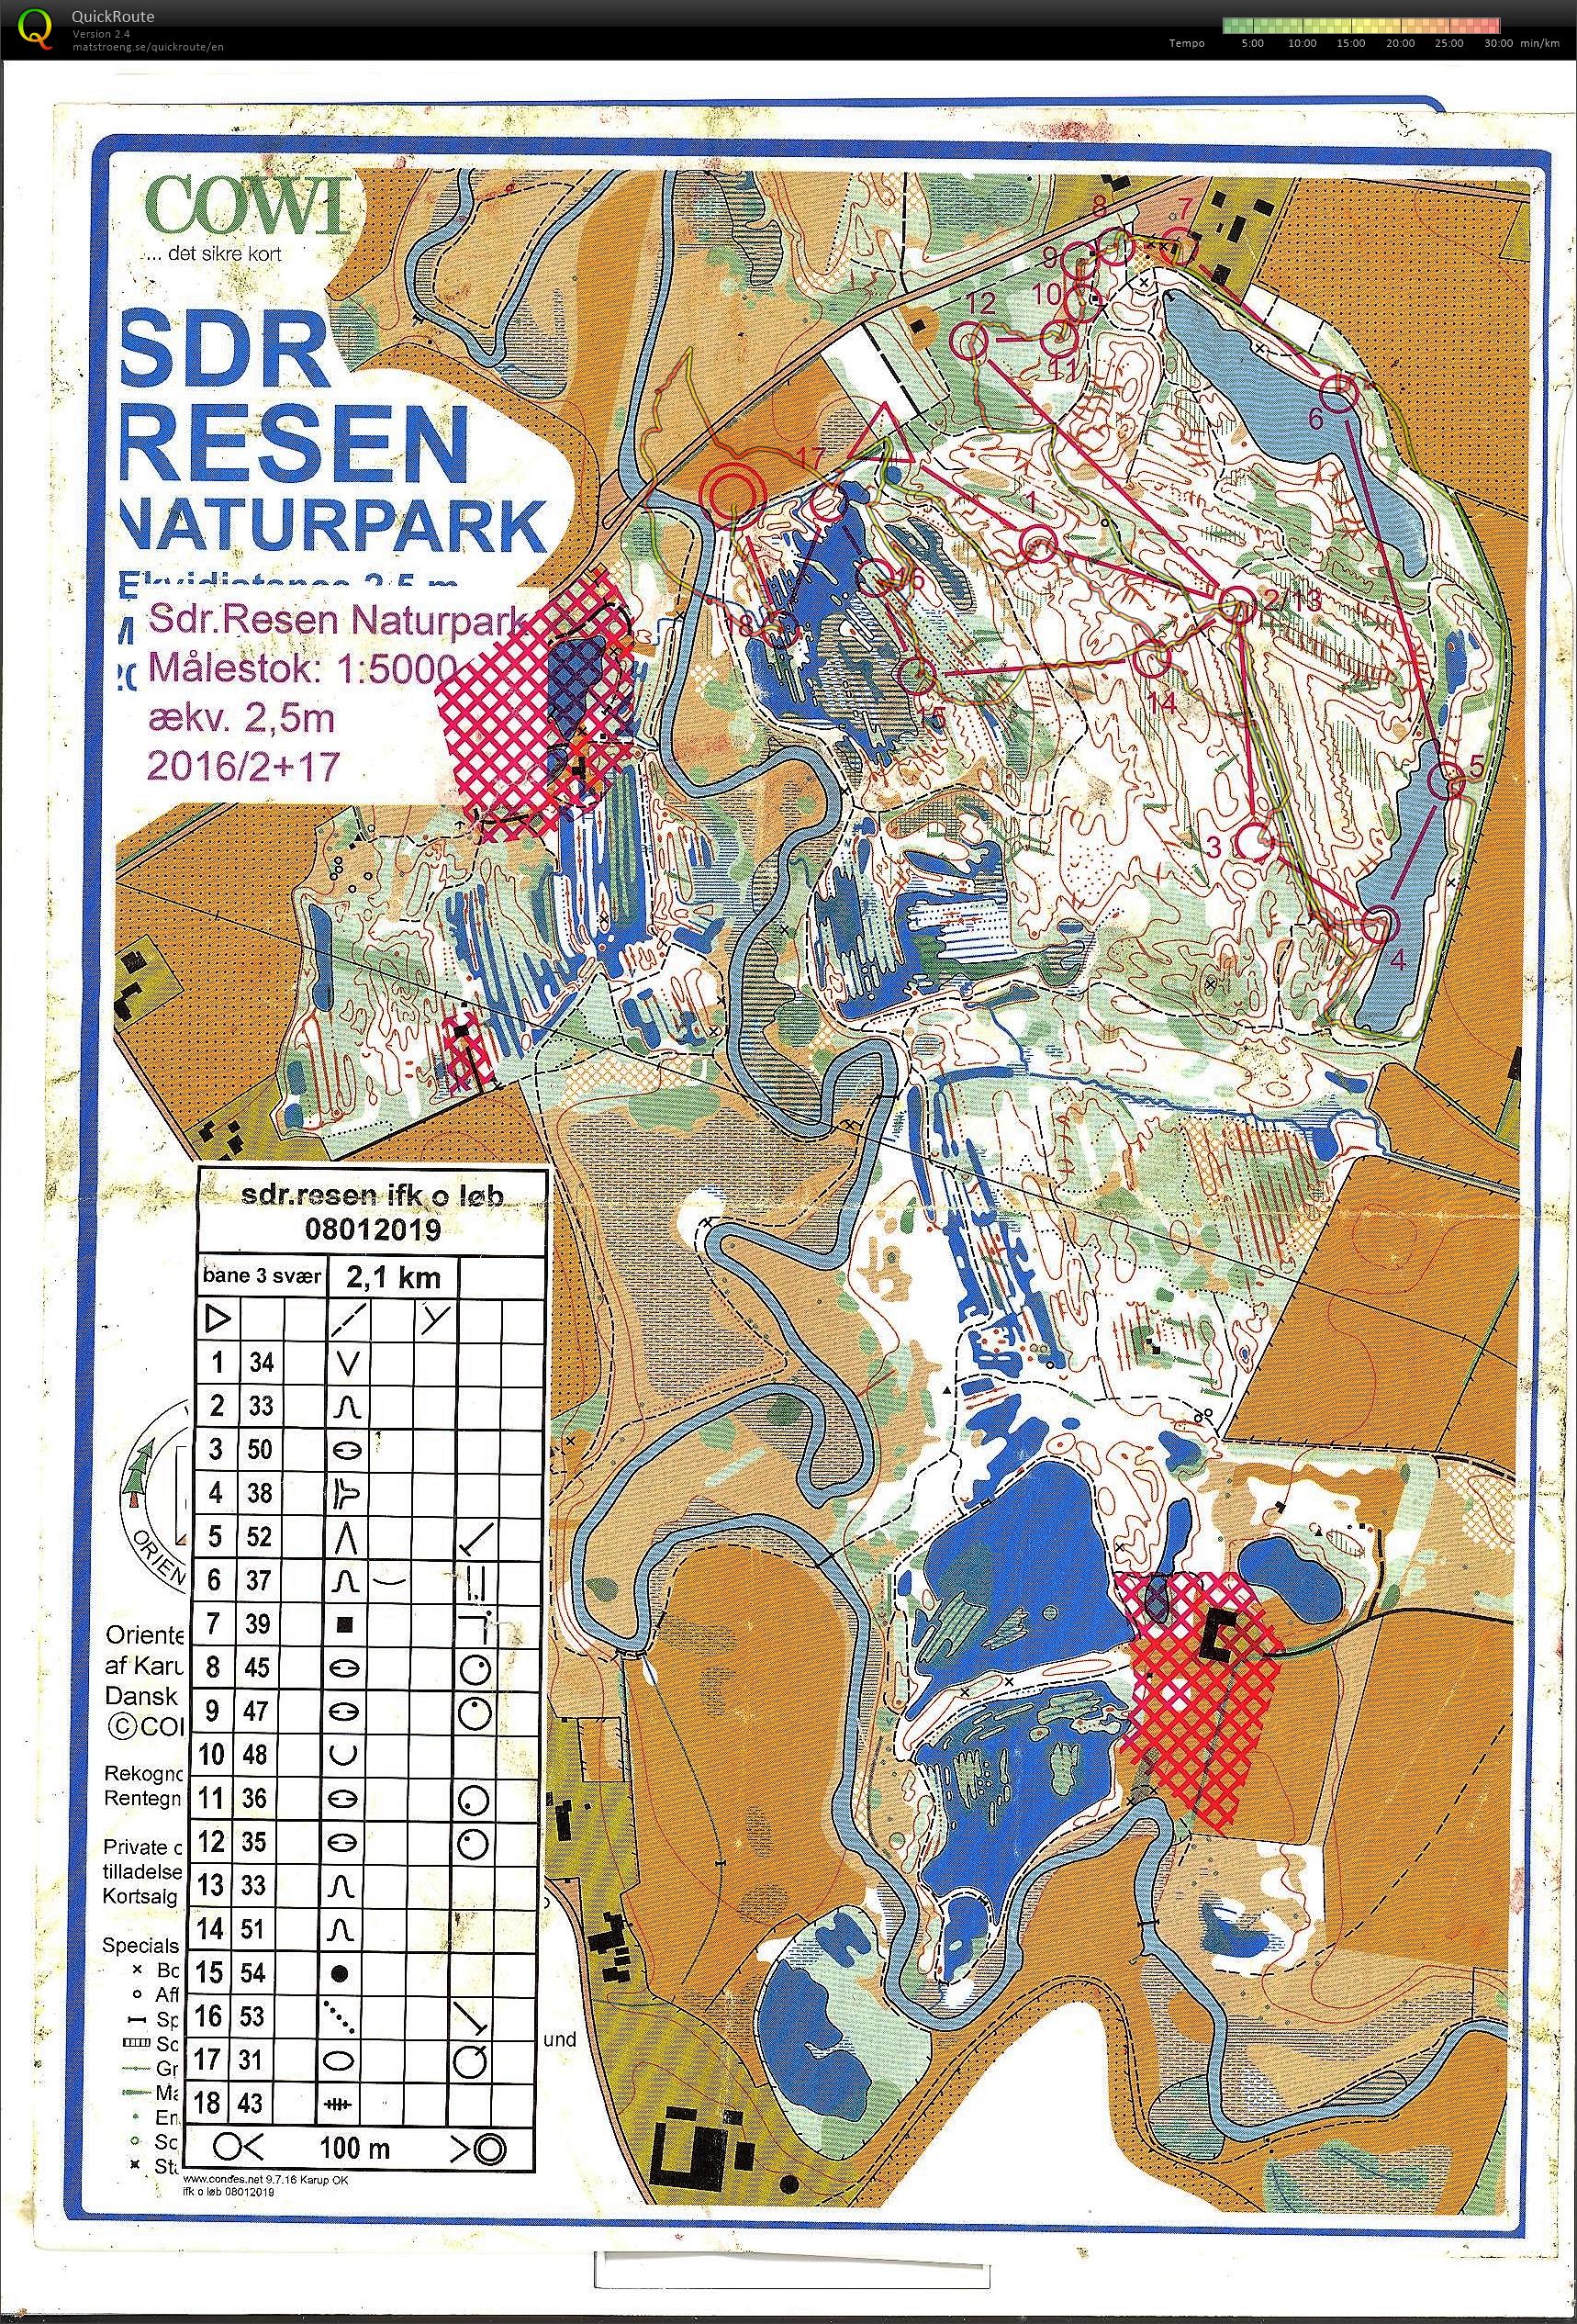 Resen Naturpark (2019-01-08)